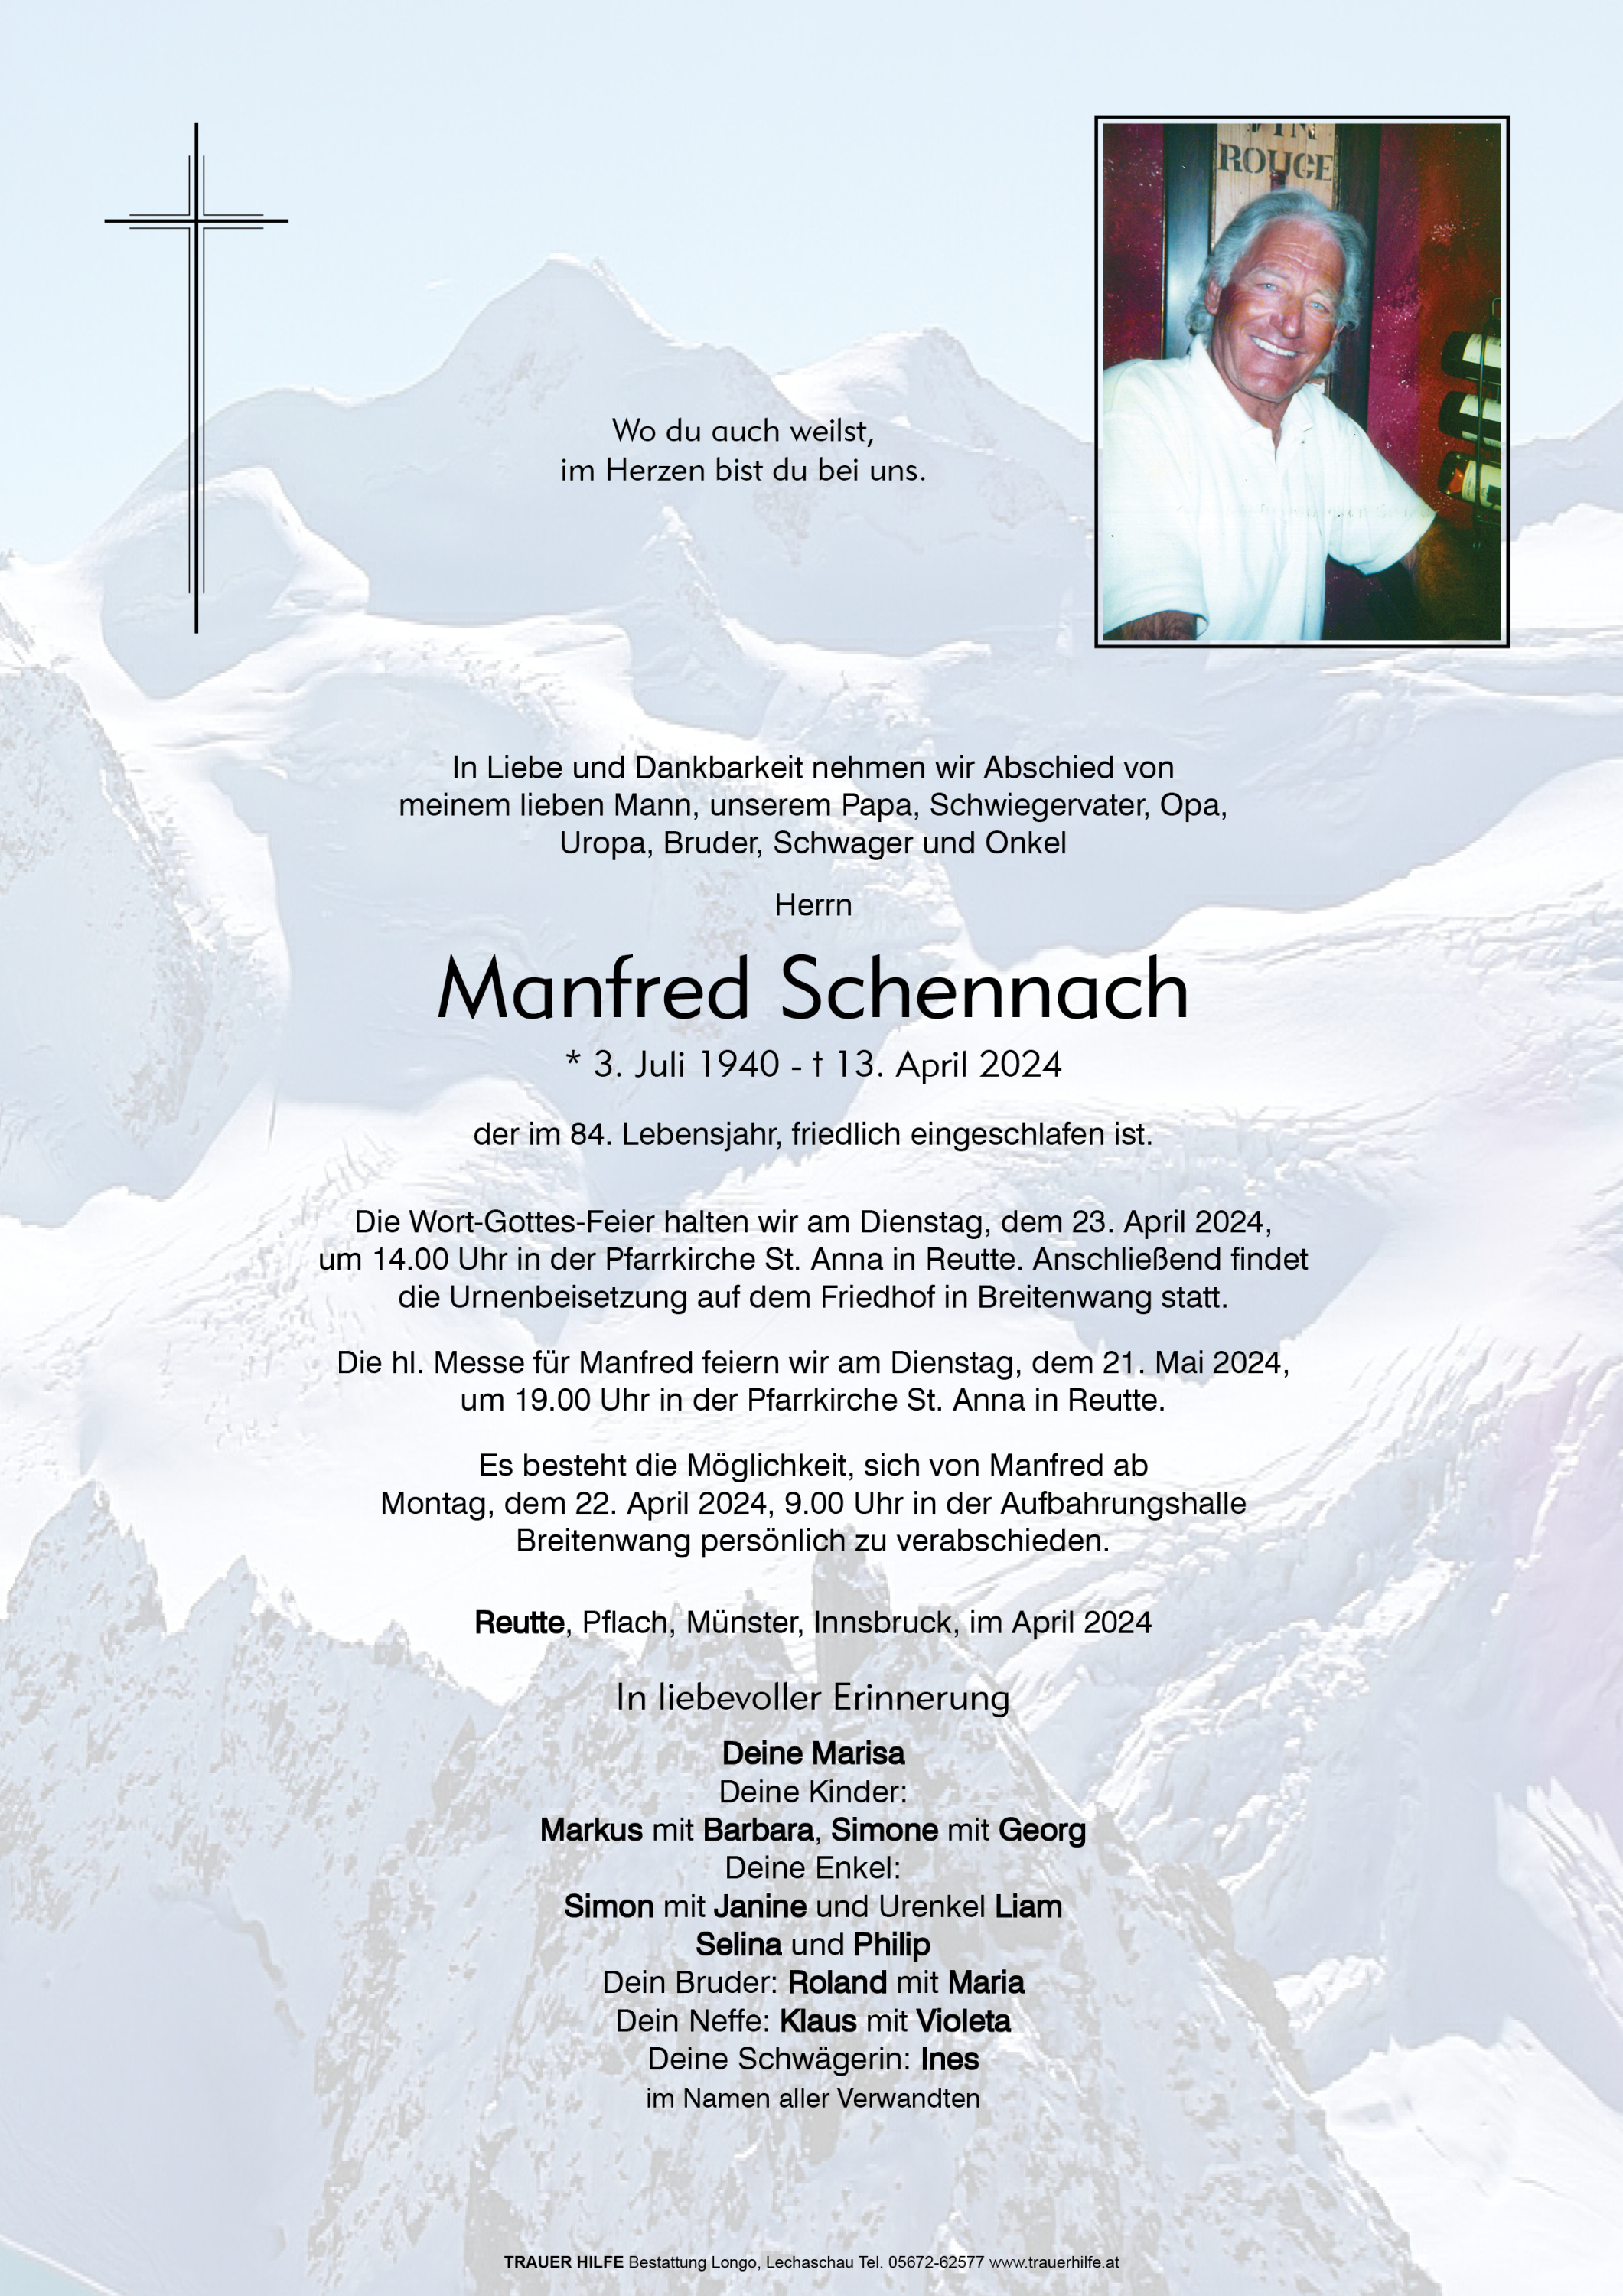 Manfred Schennach